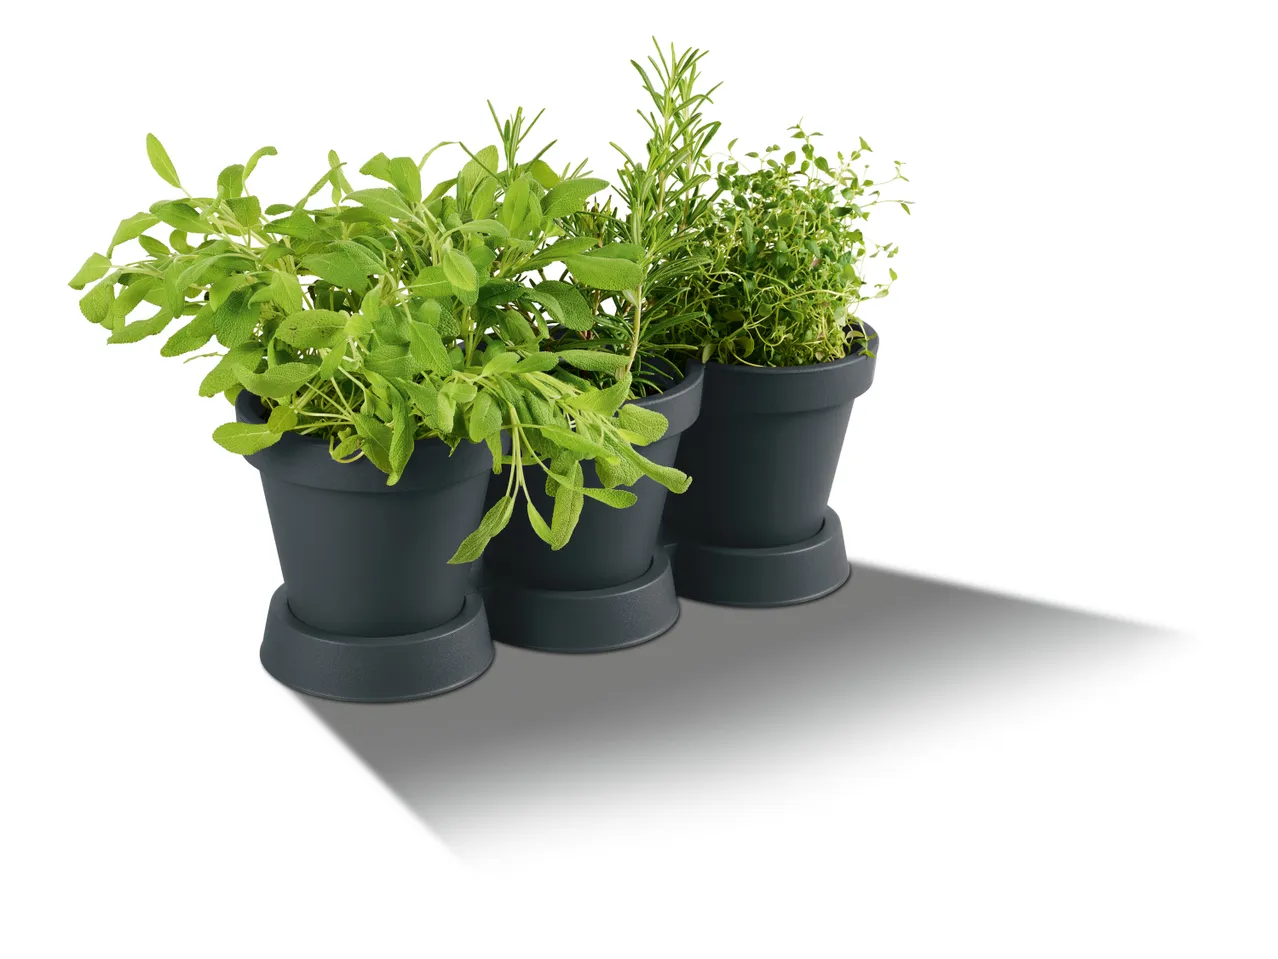 Vaso triplo per piante , prezzo 3.99 EUR 
Vaso triplo per piante 
- 100% plastica ...